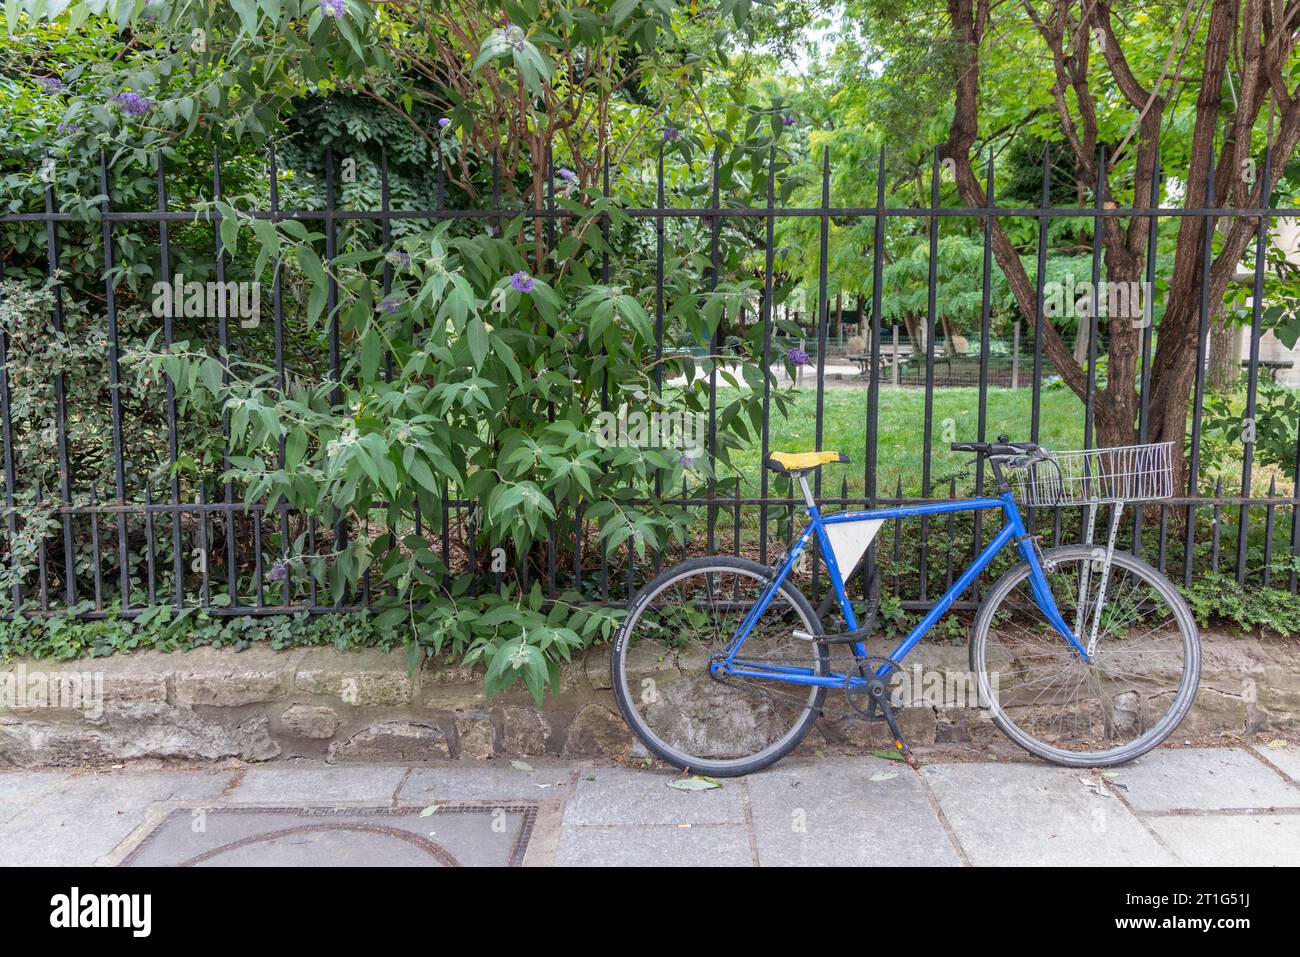 Una bicicletta blu è incatenata alle ringhiere di un parco a Parigi, in Francia. Gli alberi e i cespugli nel parco passano attraverso le ringhiere sul marciapiede. Foto Stock